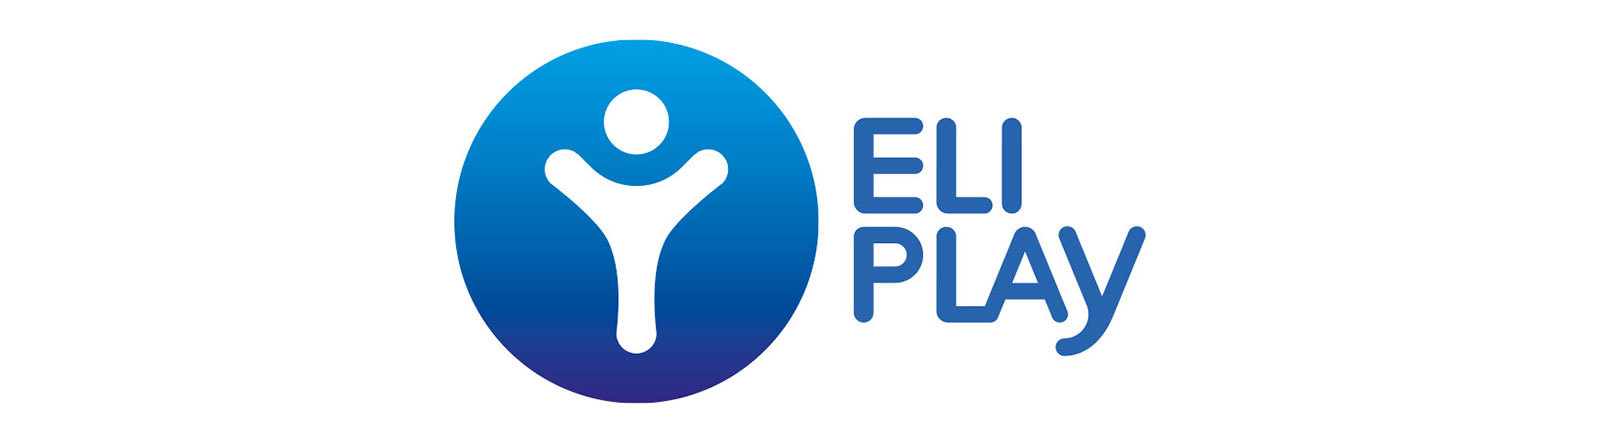 Un Nouveau logo pour ELI Play